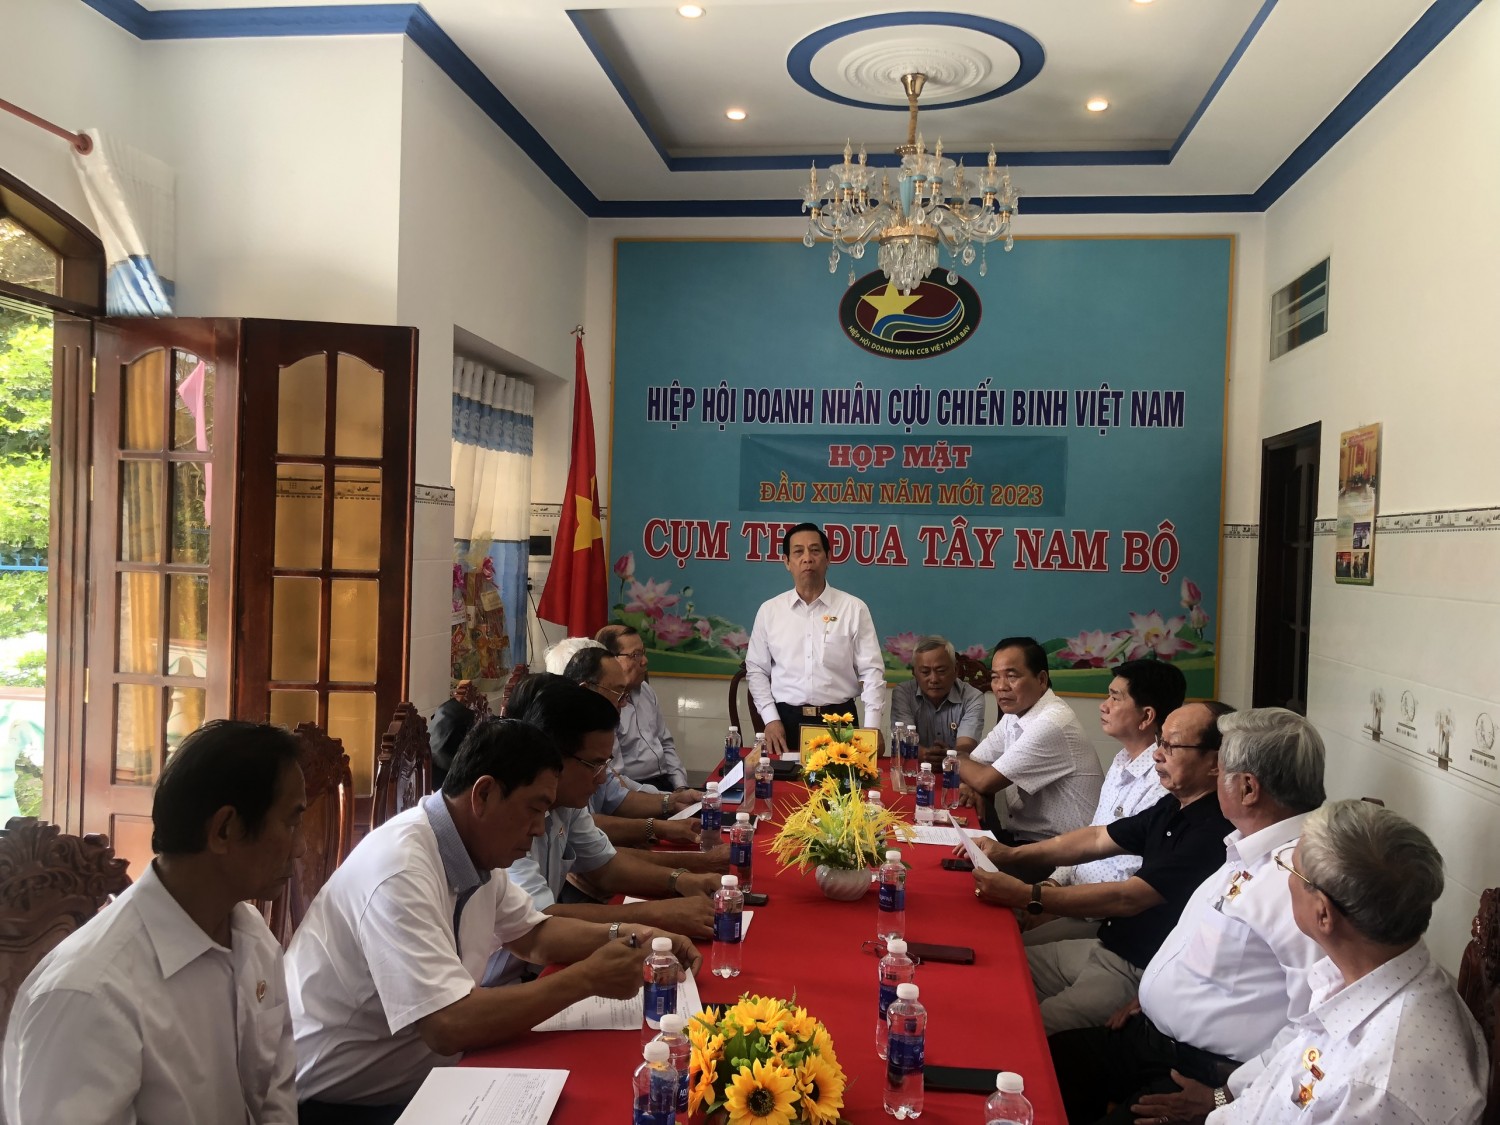  Hiệp hội Doanh nhân Cựu chiến binh Việt Nam - Cụm thi đua số 9 Tây Nam Bộ họp mặt đầu xuân 2023